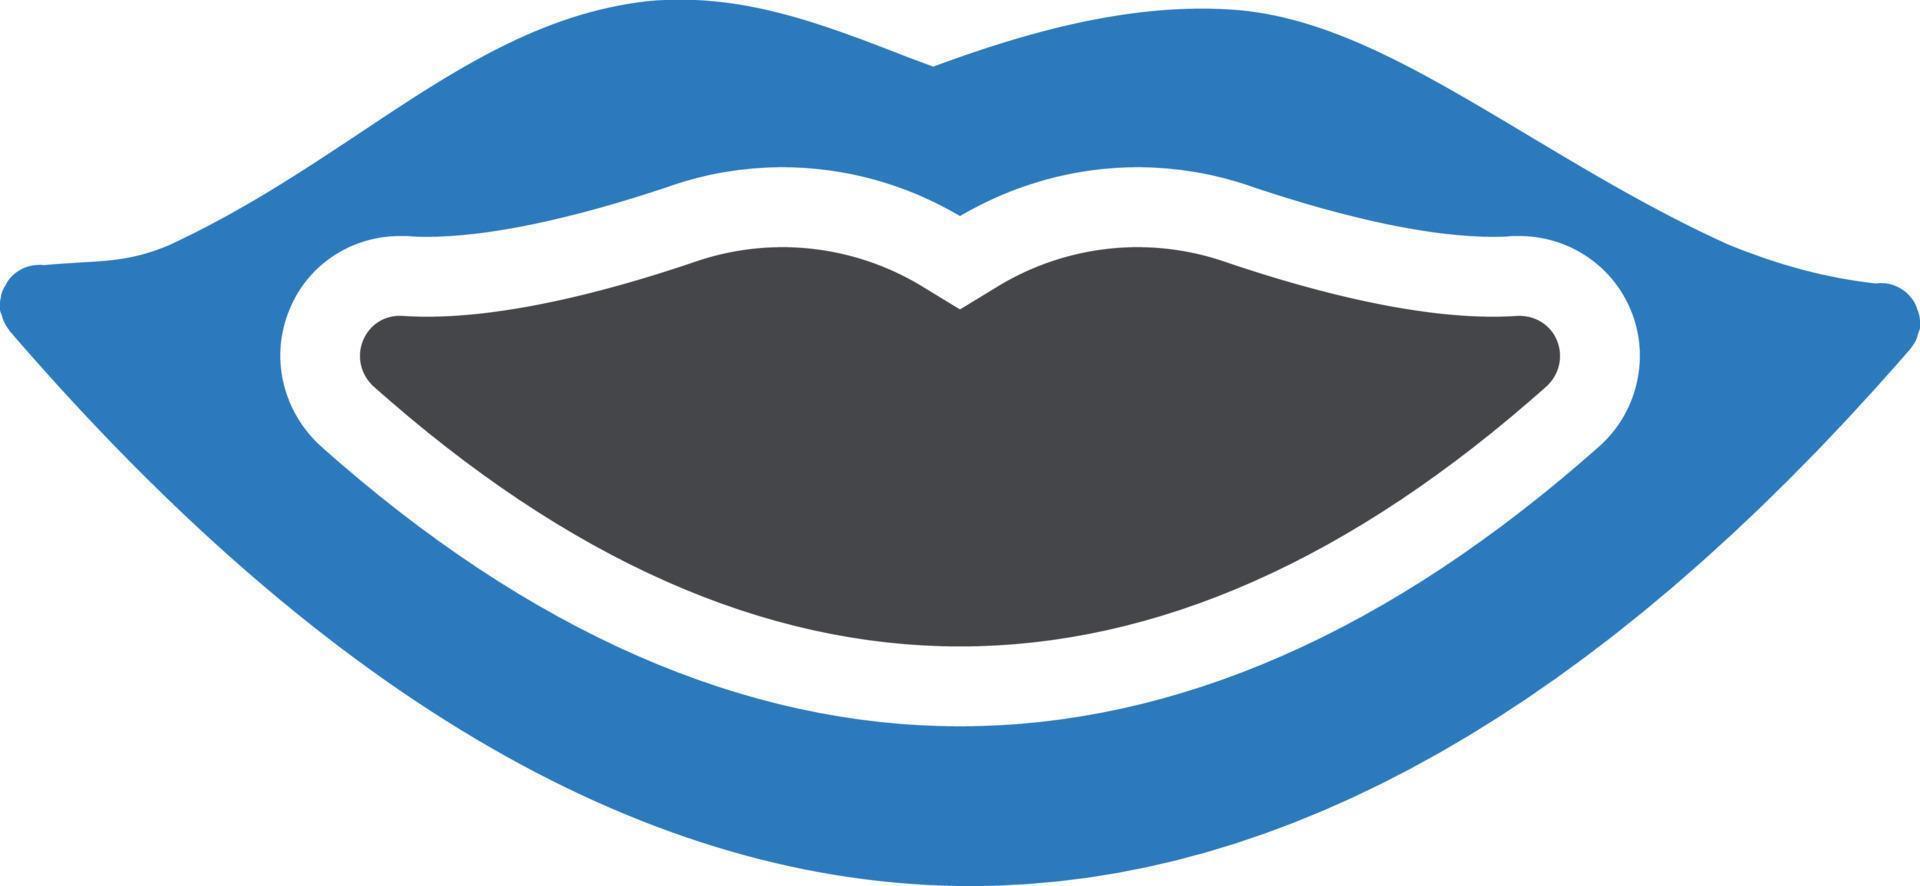 illustrazione vettoriale delle labbra su uno sfondo. simboli di qualità premium. icone vettoriali per il concetto e la progettazione grafica.